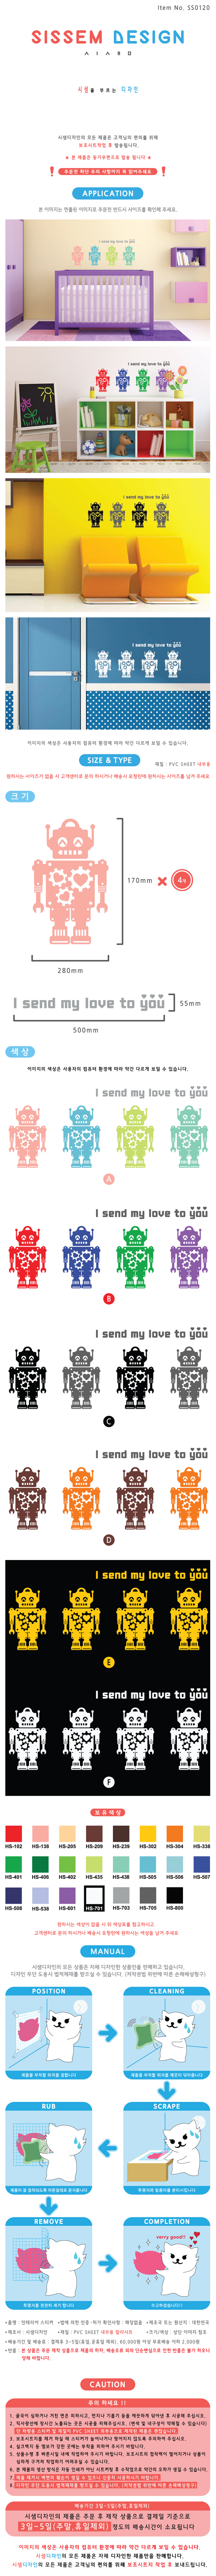 사랑의 로봇 (SS0120) 25,000원 - 시샘 인테리어, 월데코/벽지/장식, 월데코스티커, 사람 바보사랑 사랑의 로봇 (SS0120) 25,000원 - 시샘 인테리어, 월데코/벽지/장식, 월데코스티커, 사람 바보사랑